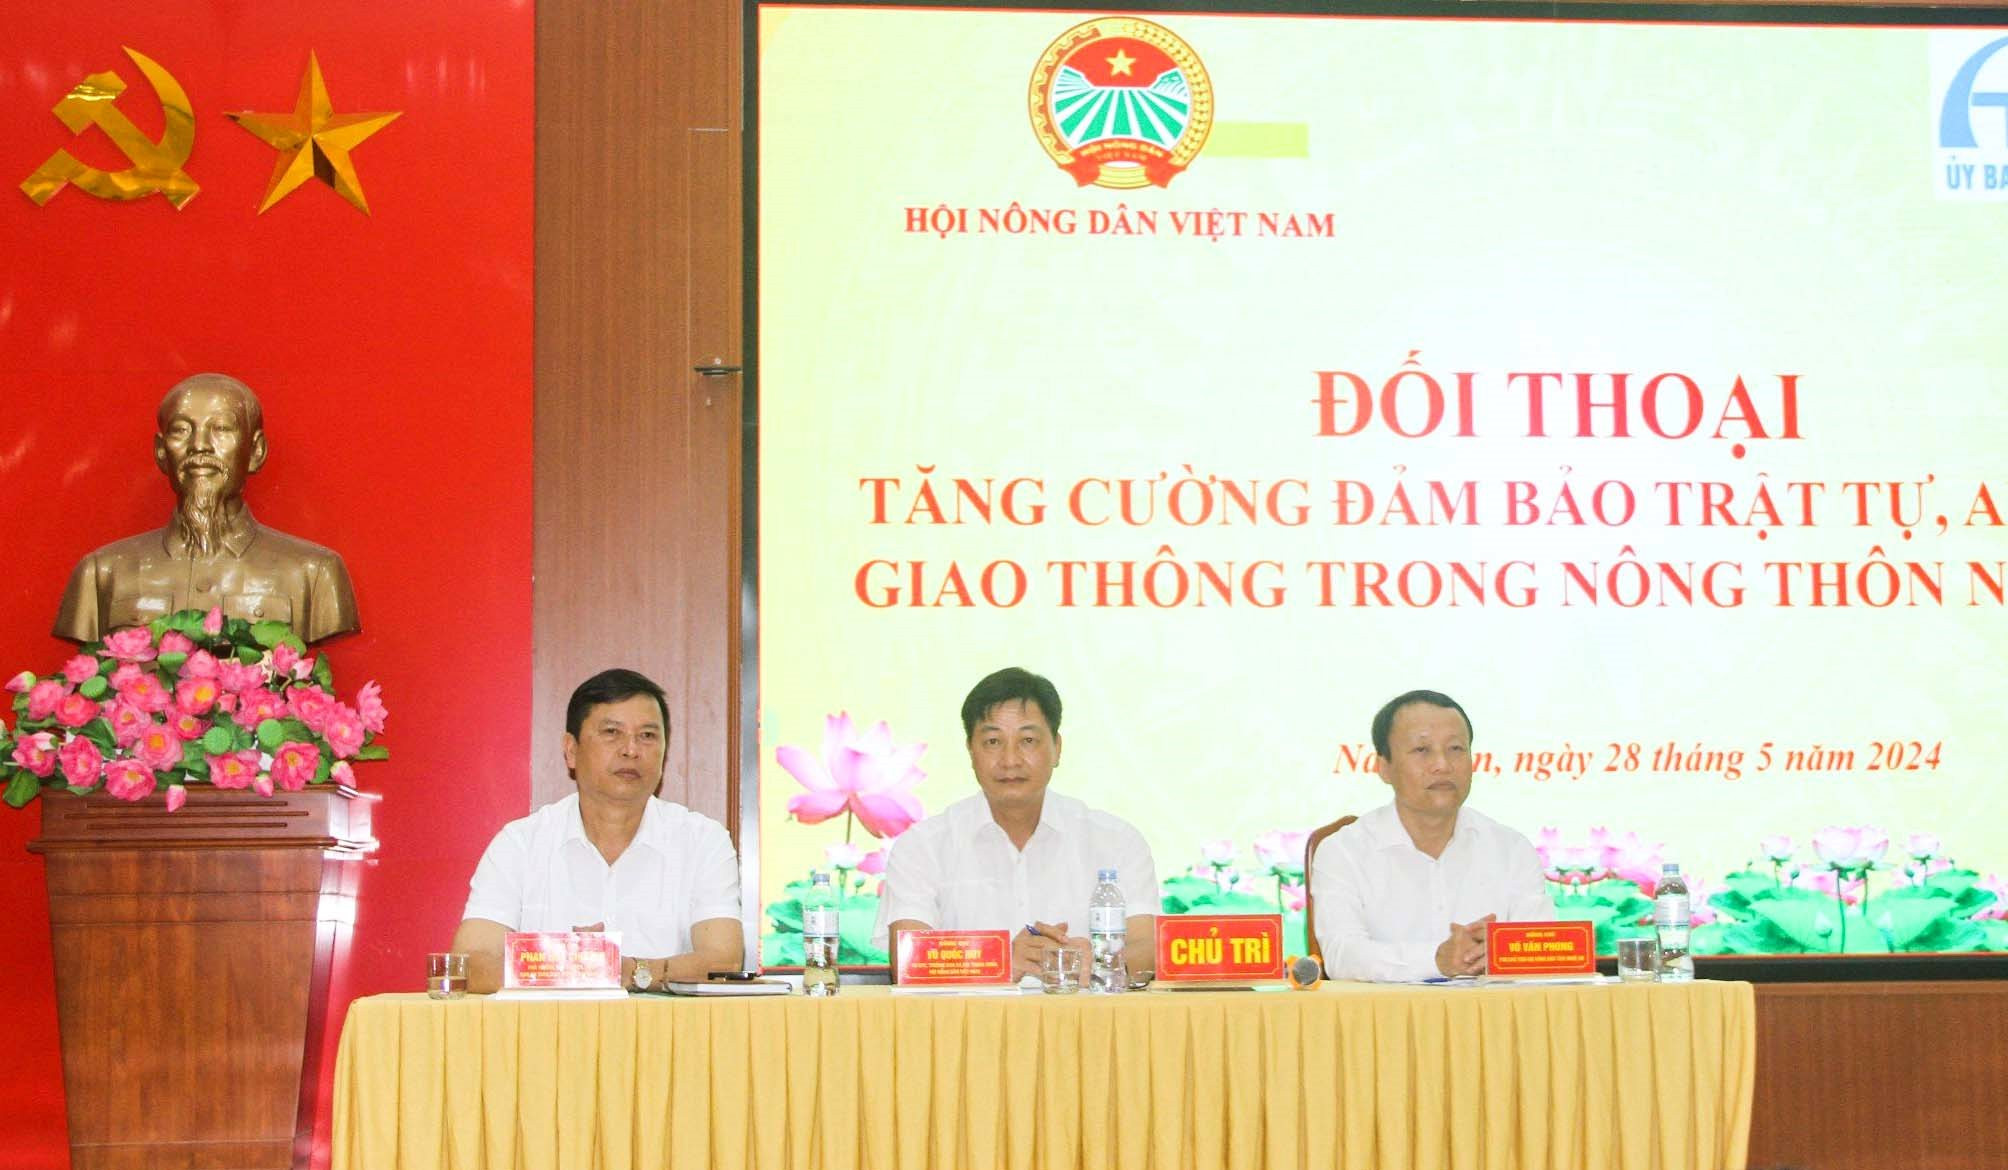 Chủ trì hội nghị đối thoại có các đồng chí Trung ương Hội Nông dân Việt Nam, Hội Nông dân tỉnh và Ban ATGT tỉnh. Ảnh: T.P